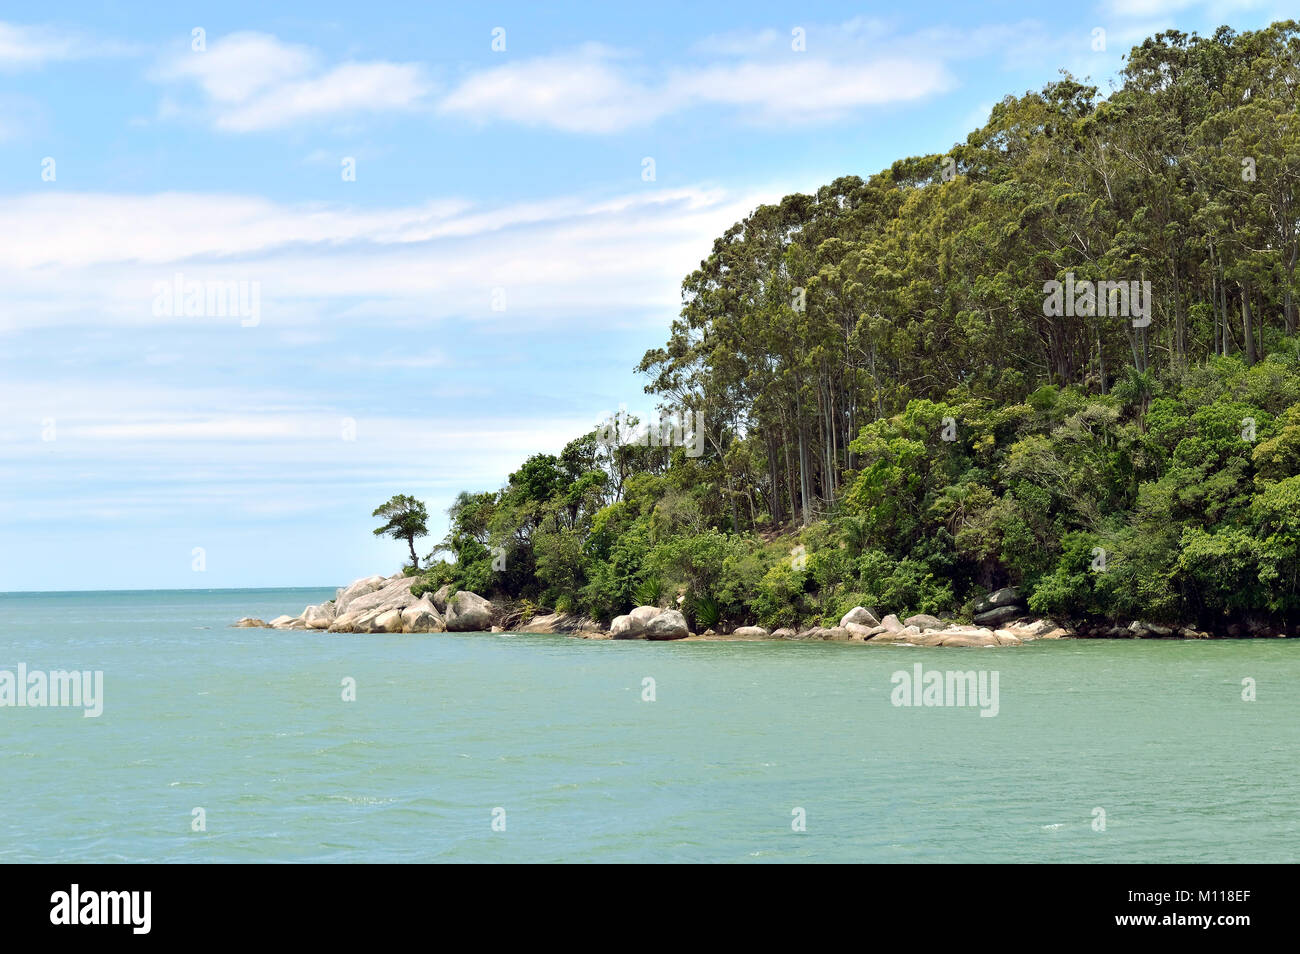 Scène tropical avec colline verte avec des arbres, l'océan Atlantique et ciel bleu Banque D'Images